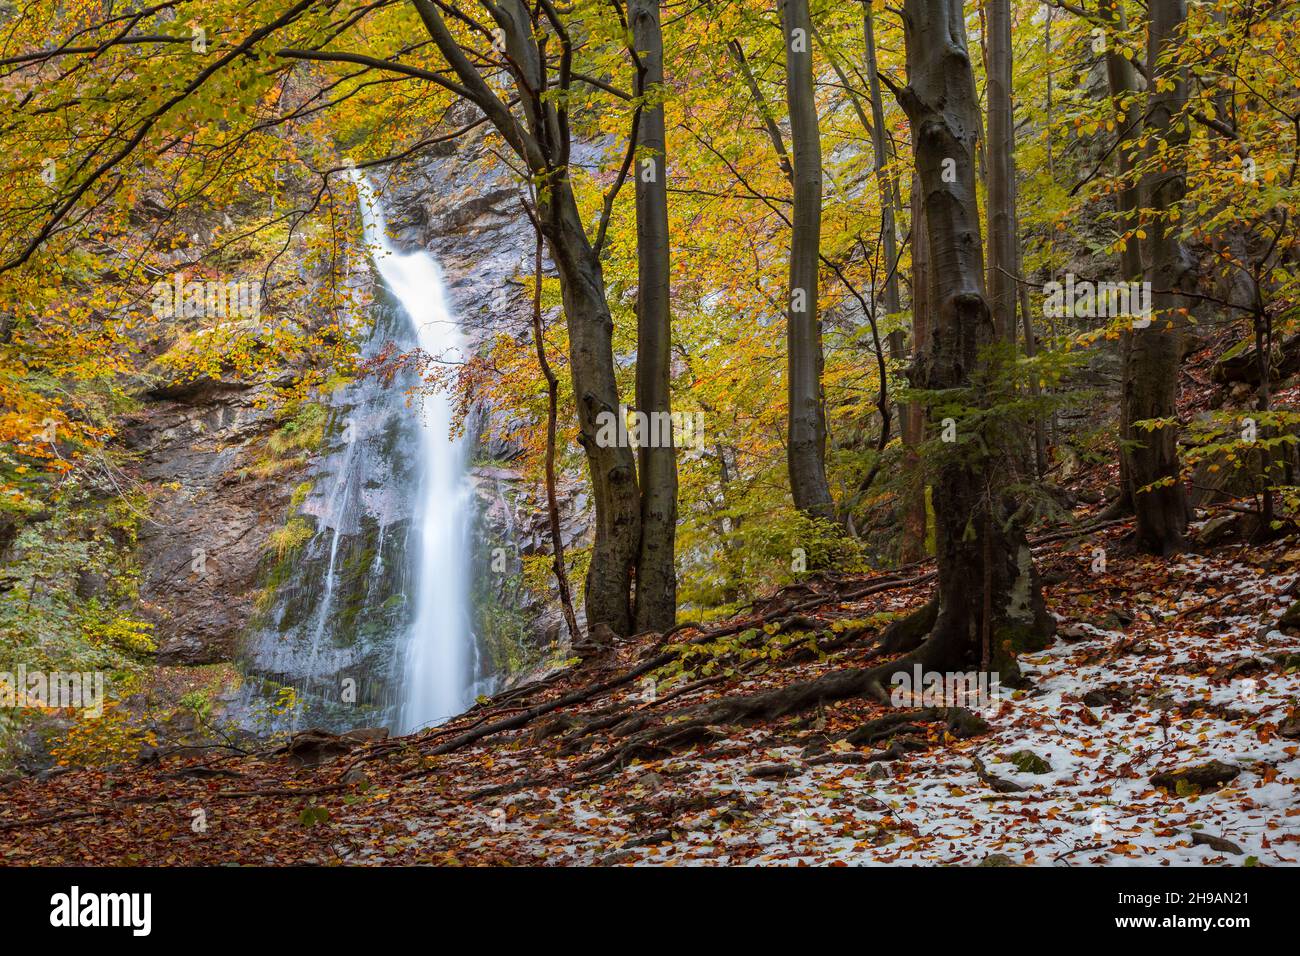 Waterfall in Mala Fatra national park, Slovakia. Stock Photo